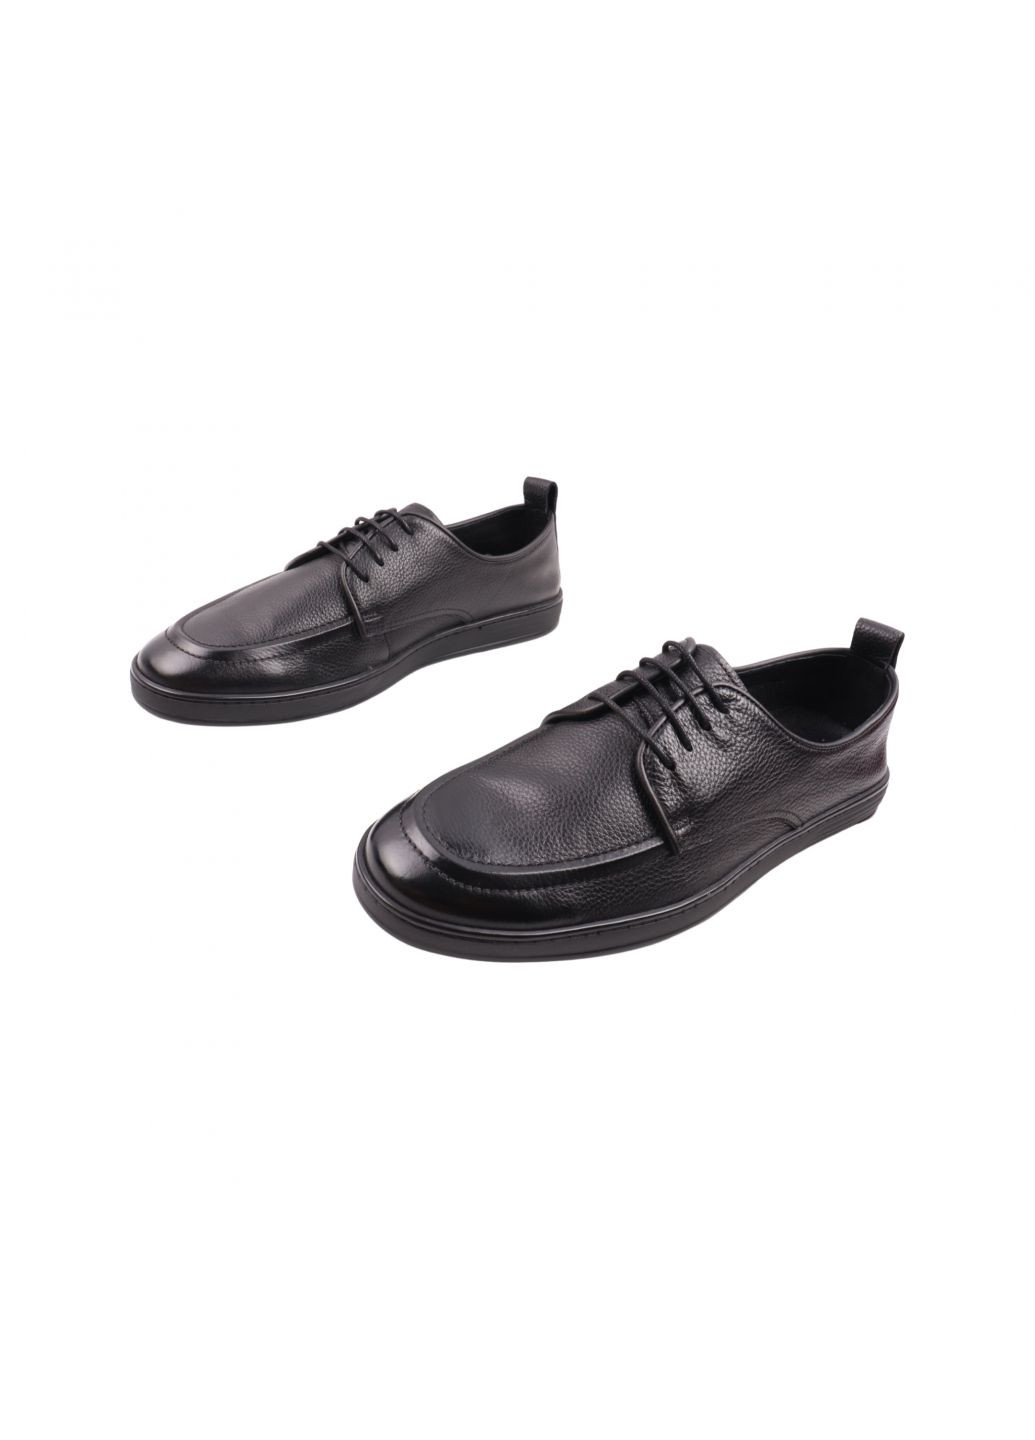 Черные туфли мужские черные натуральная кожа Clemento